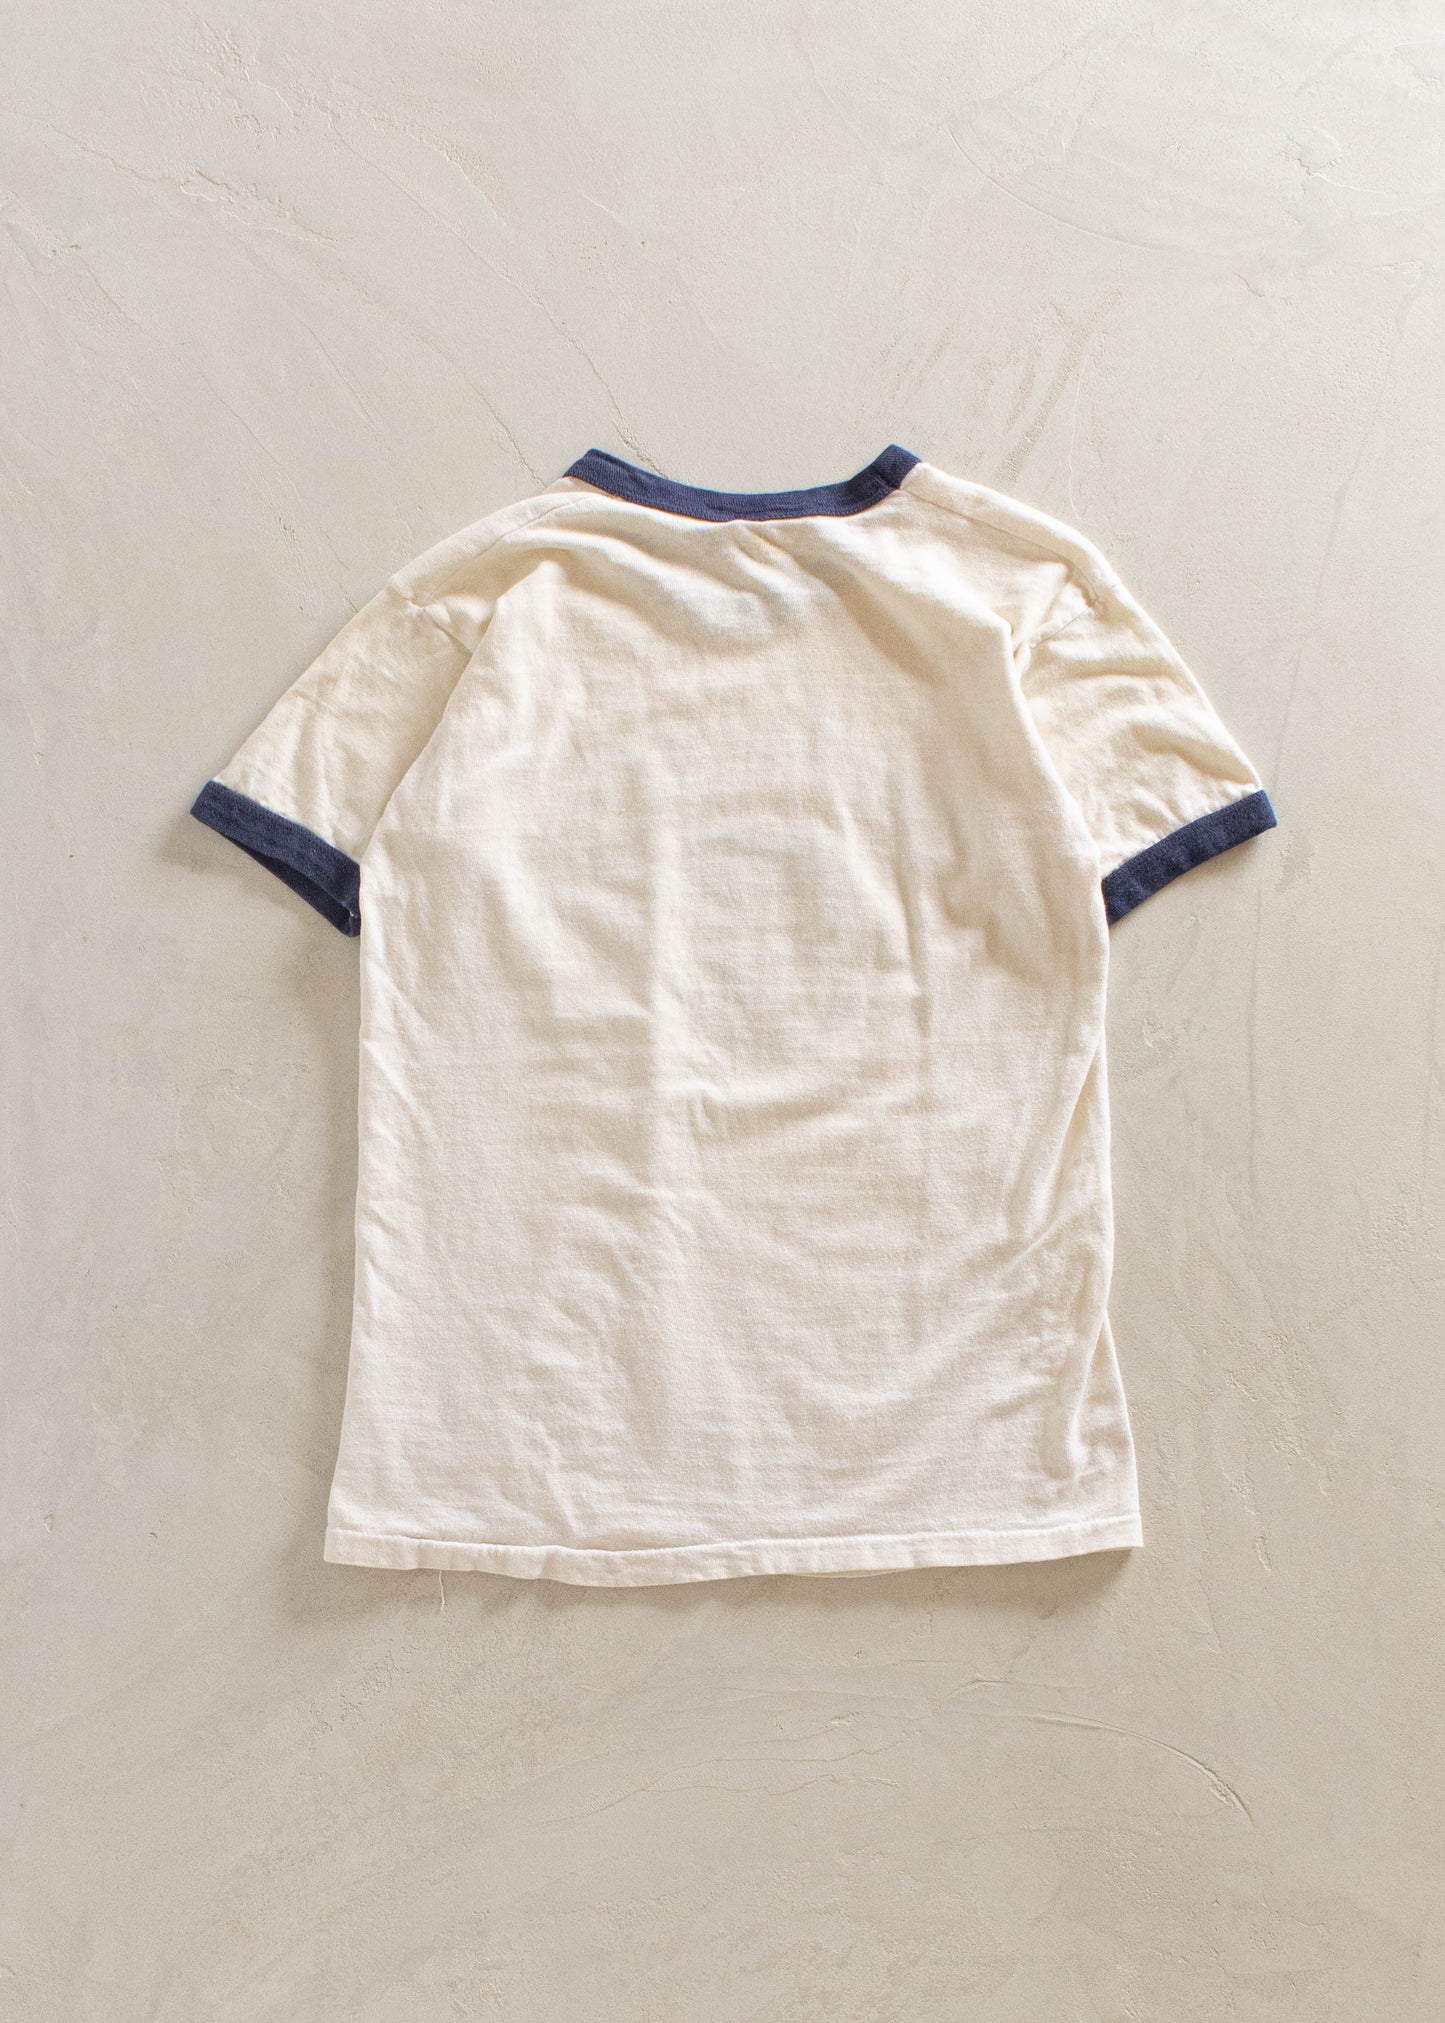 1970s Andy's Kappa Beta Souvenir T-Shirt Size XS/S